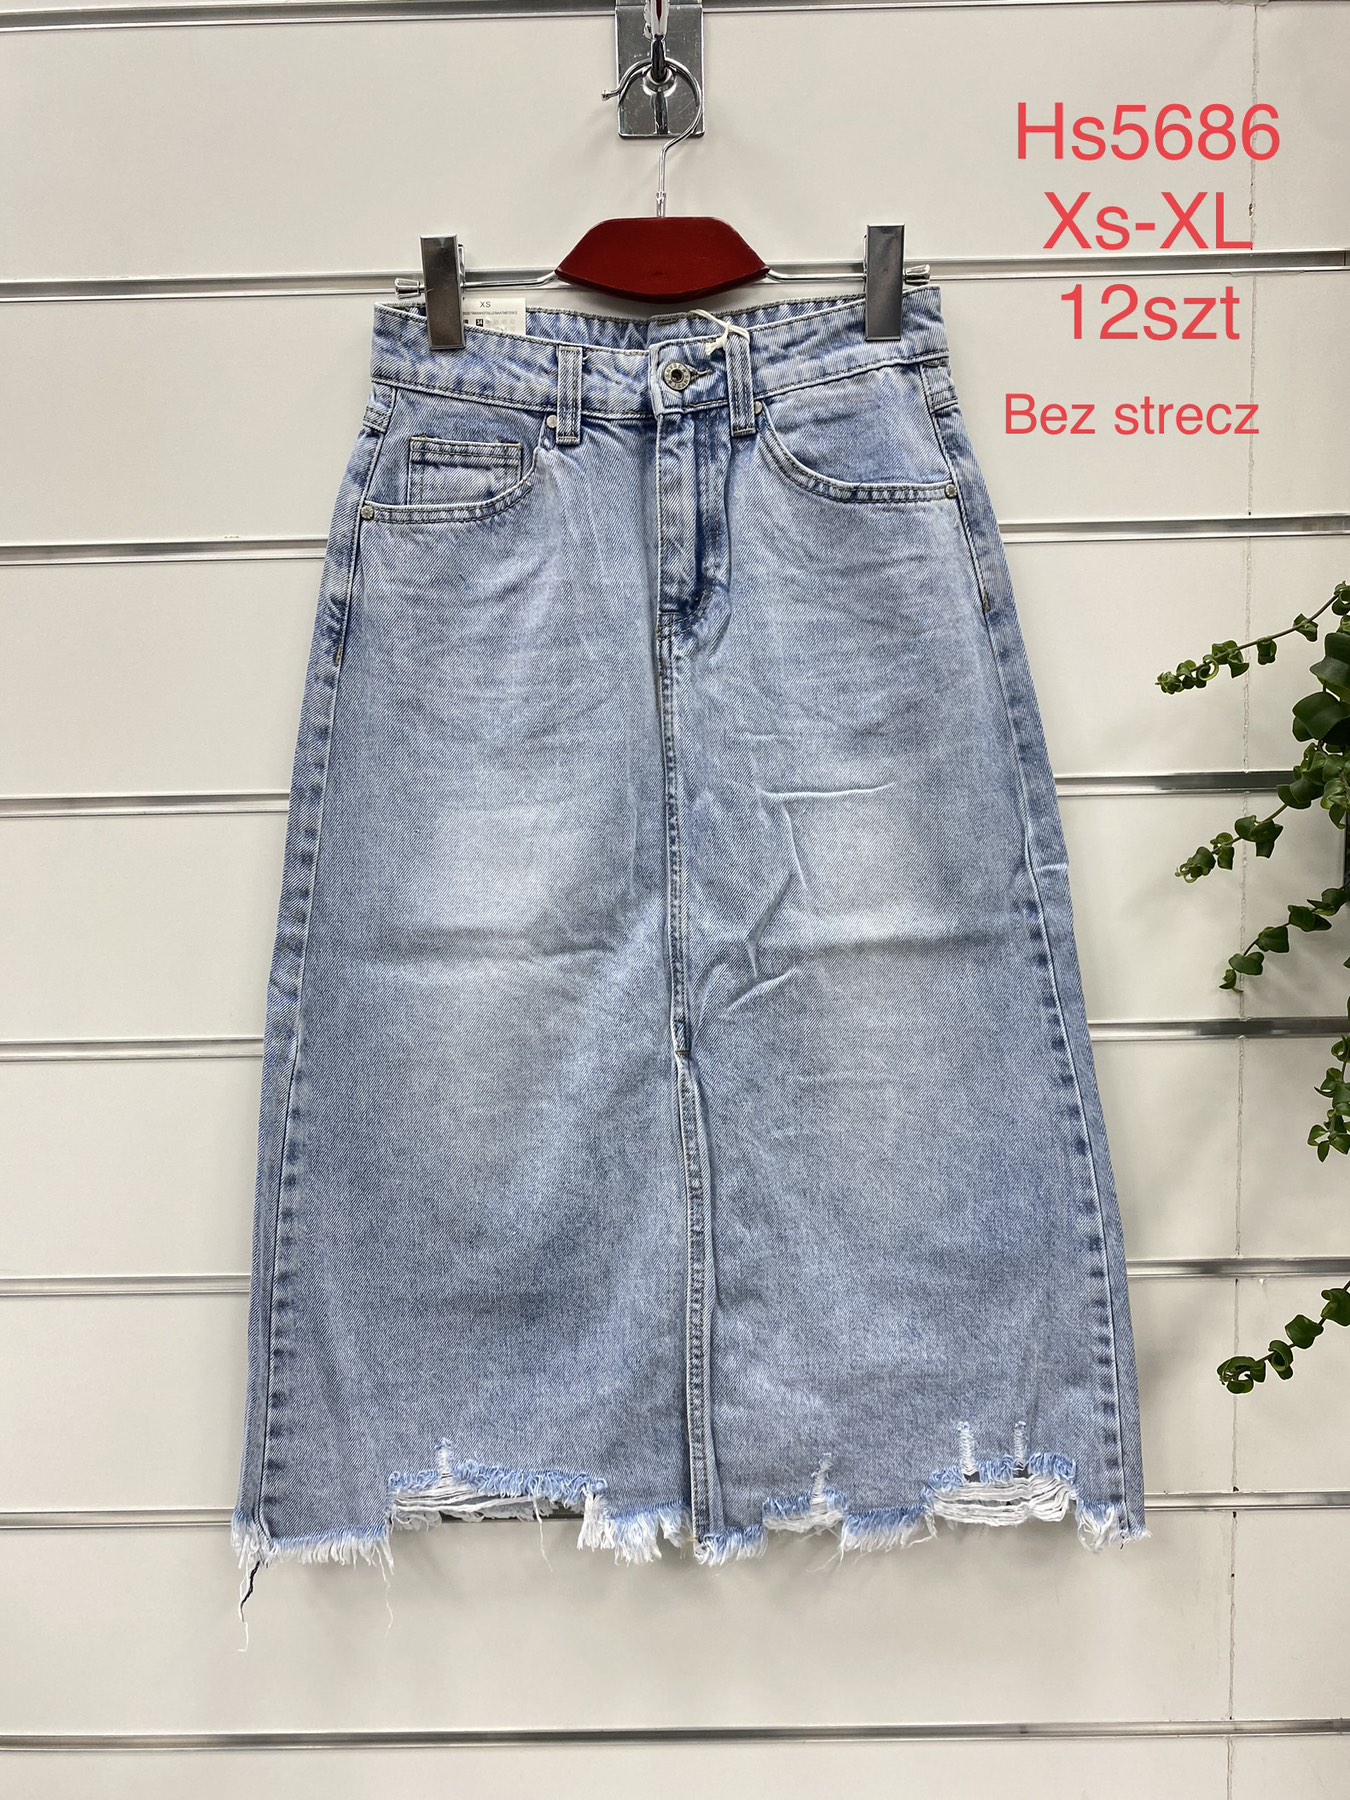 Spódnica  damskie jeans   Roz  XS-XL  1 kolor . Paczka 12szt